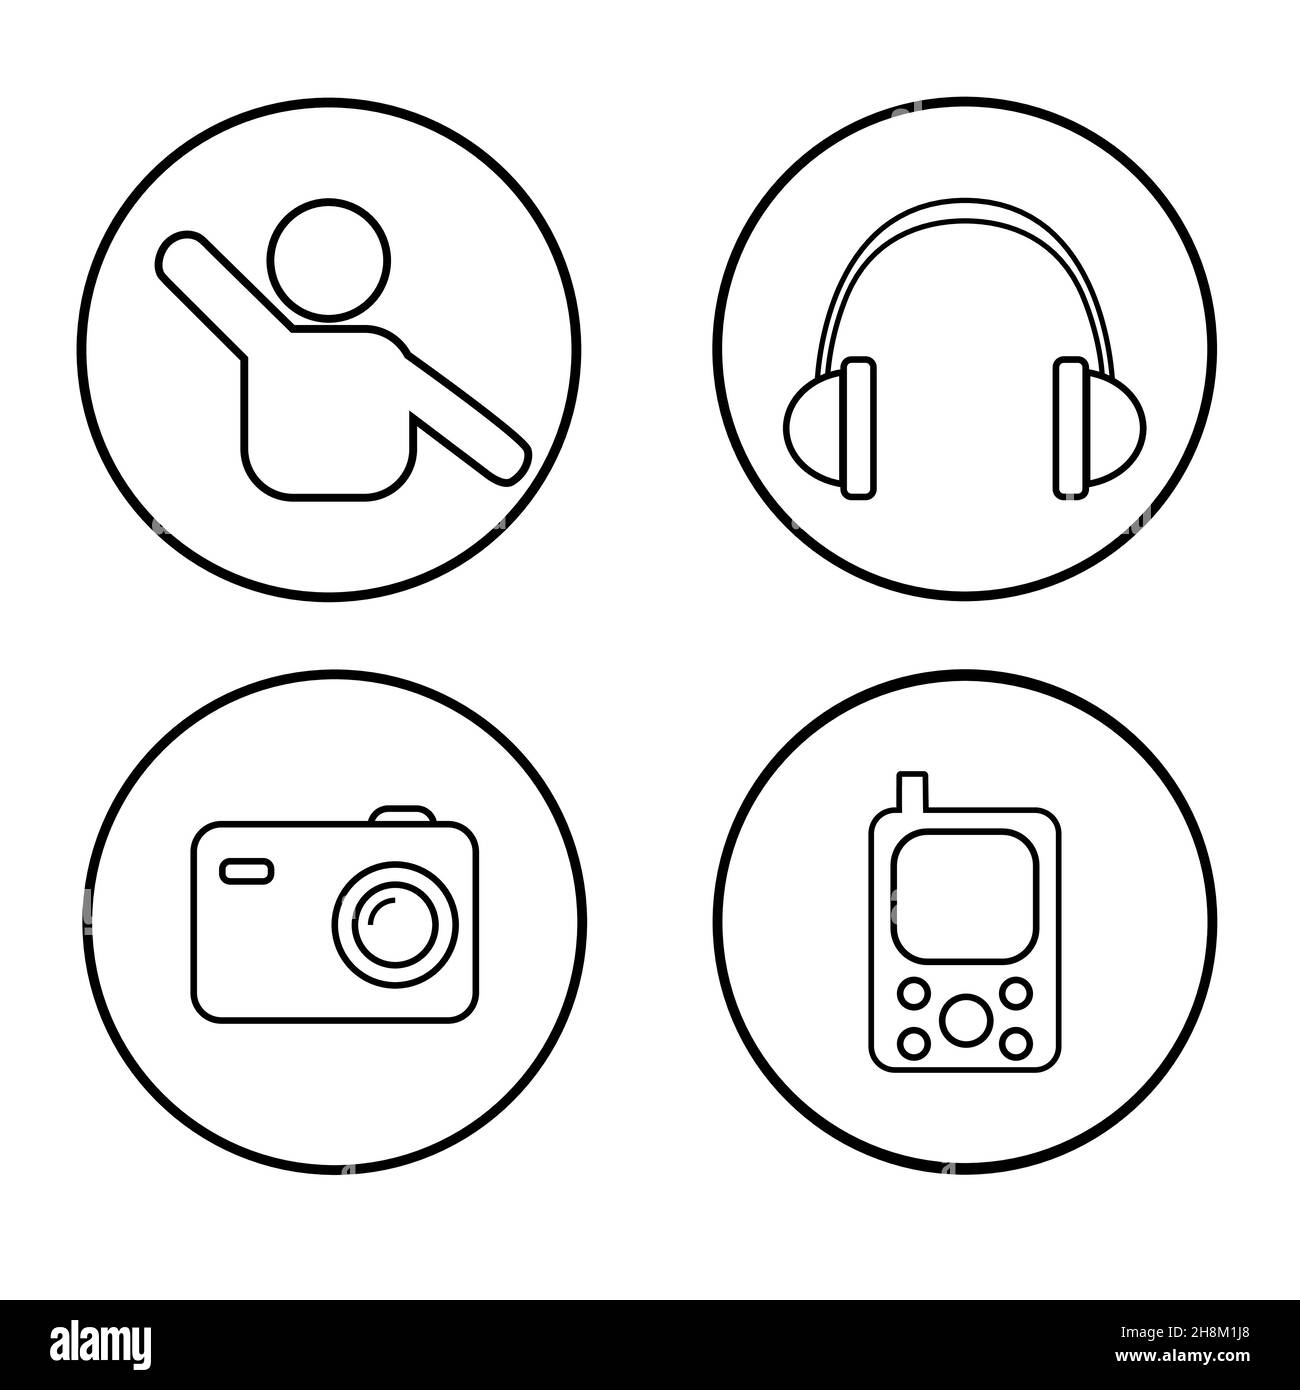 ensemble d'icônes avec différents symboles - homme, casque, appareil photo, lecteur de musique Illustration de Vecteur